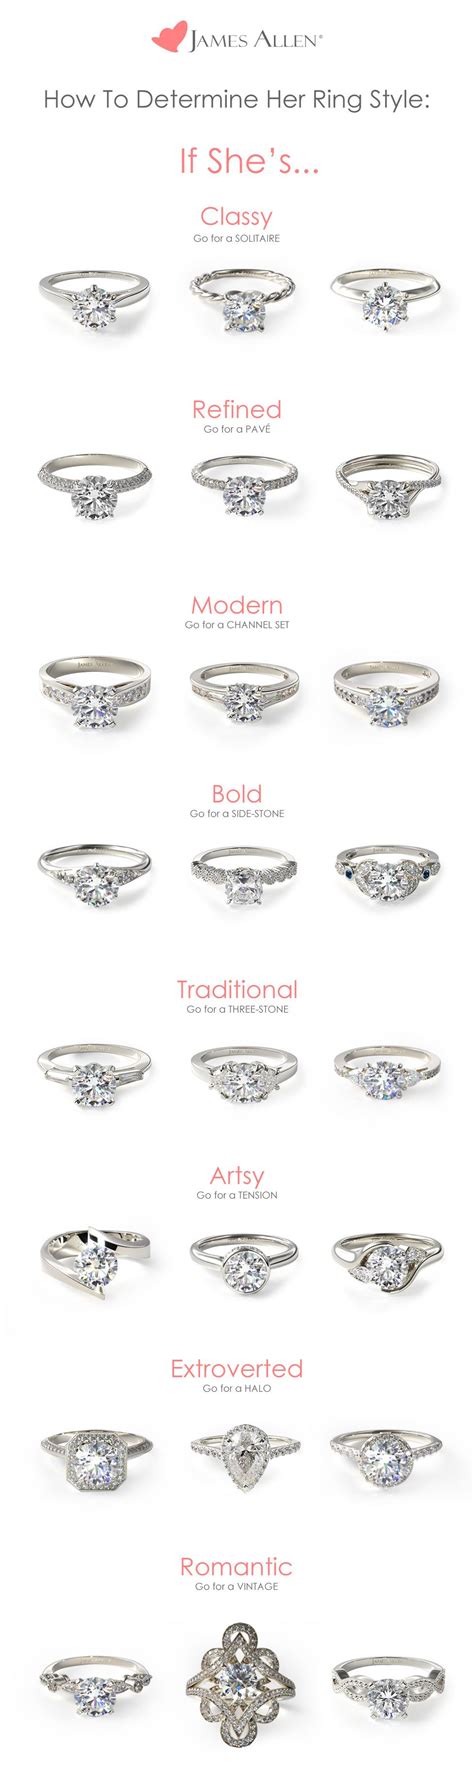 Engagement Rings 101 As Seen On Pinterest Designer Engagement Rings